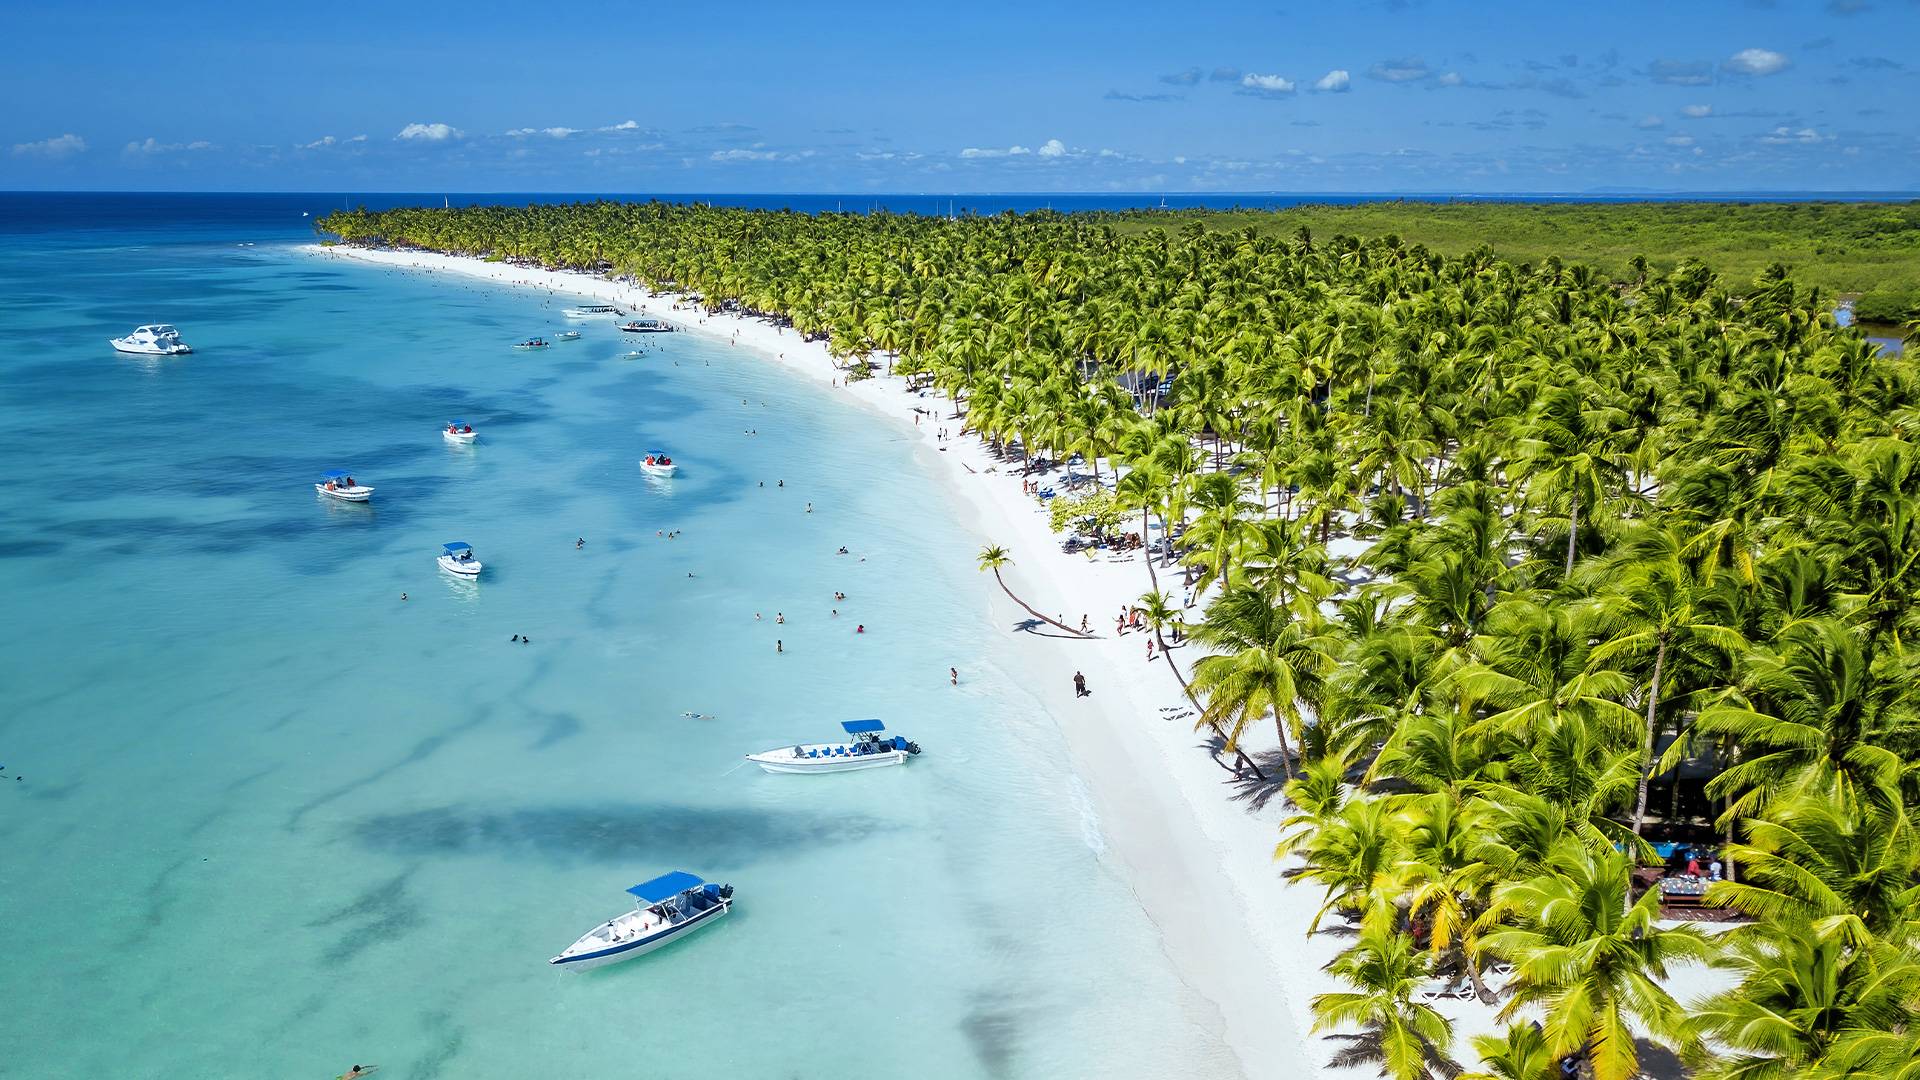 En République Dominicaine, des stations balnéaires aux plages paradisiaques